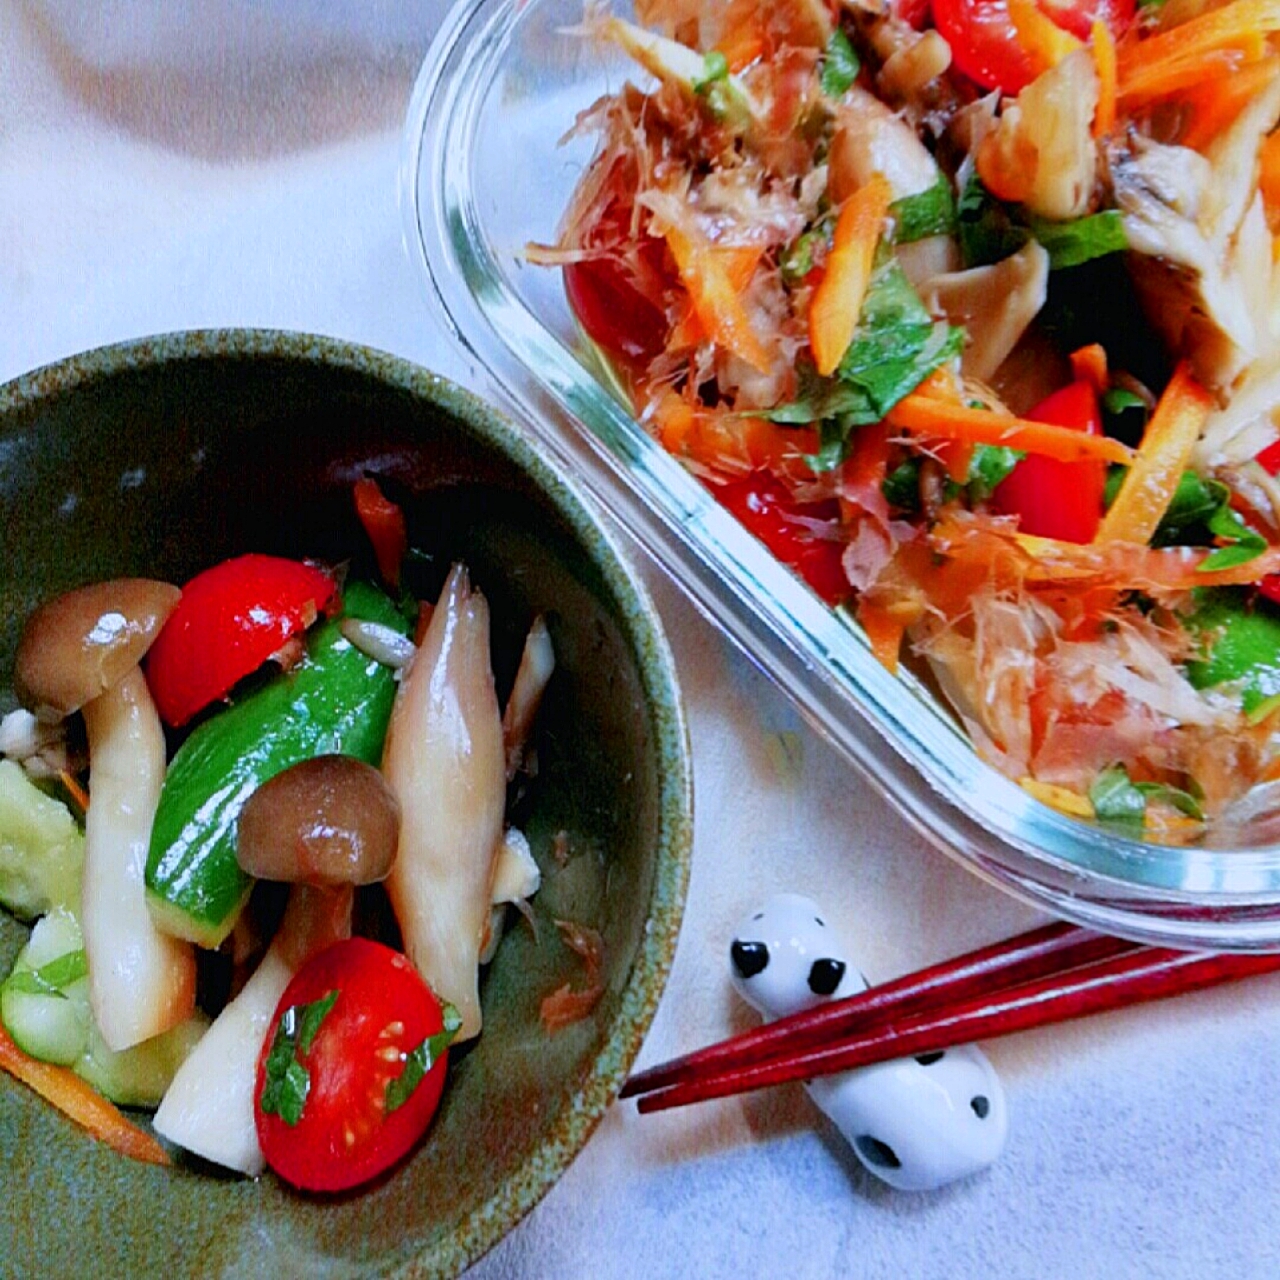 由美さんの料理から

カンタン酢できのこいっぱい🍄和風ピクルス!